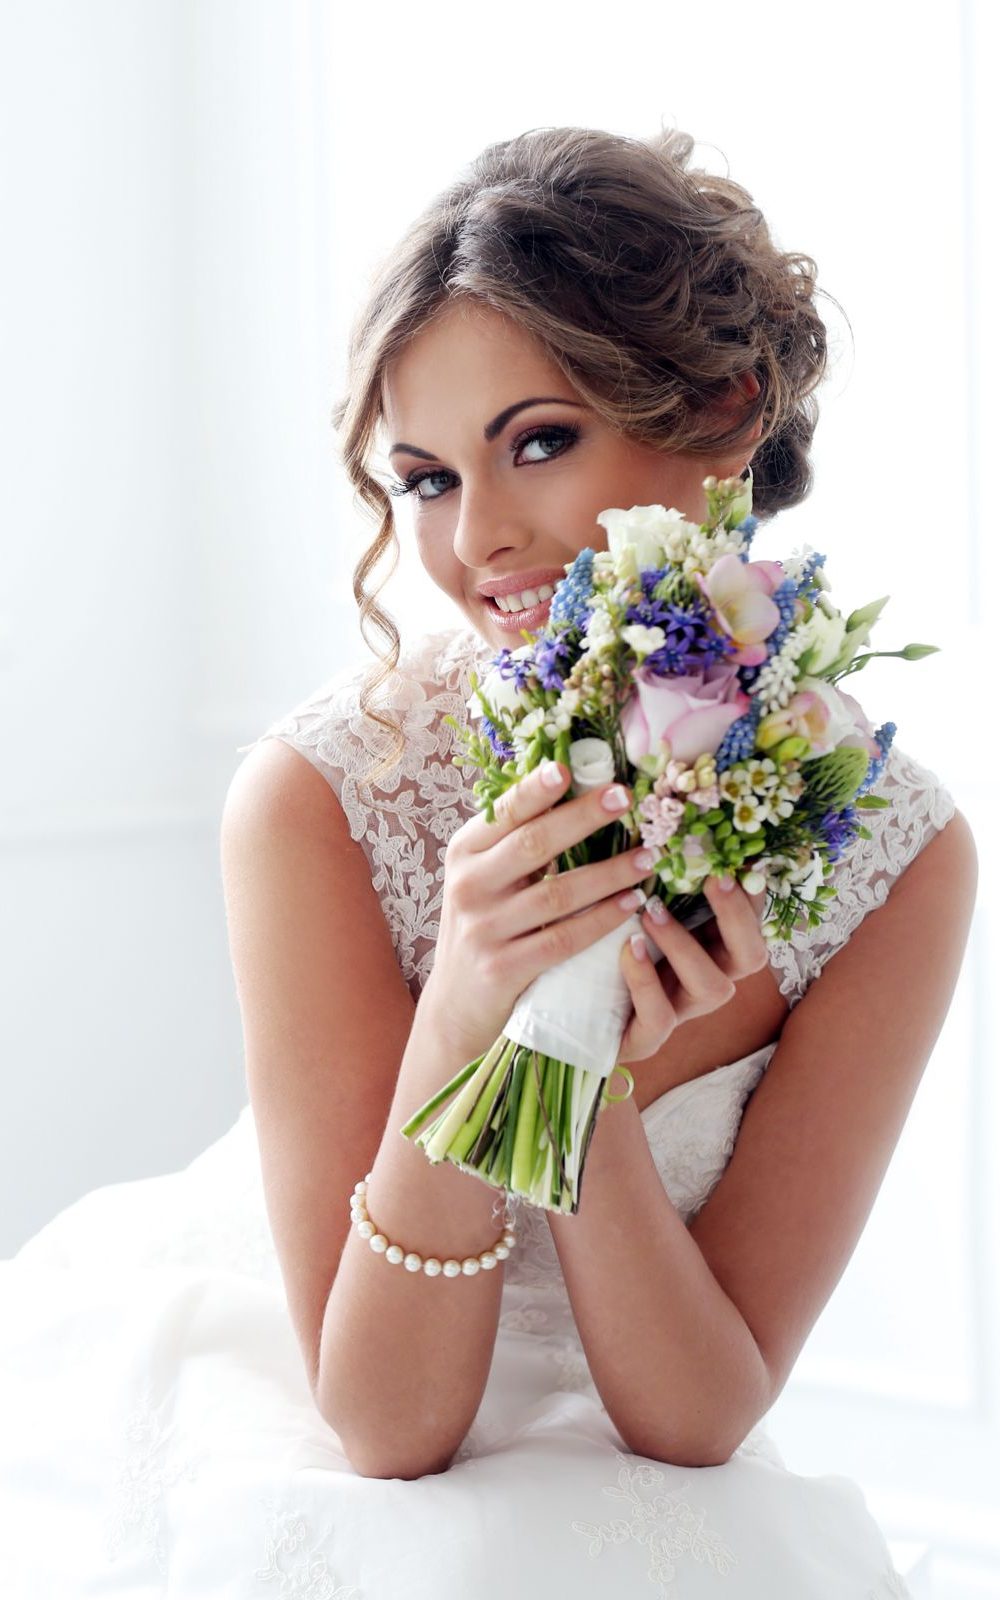 Braut in weißem Spitzenkleid hält lächelnd einen Strauß mit lila und weißen Blumen.